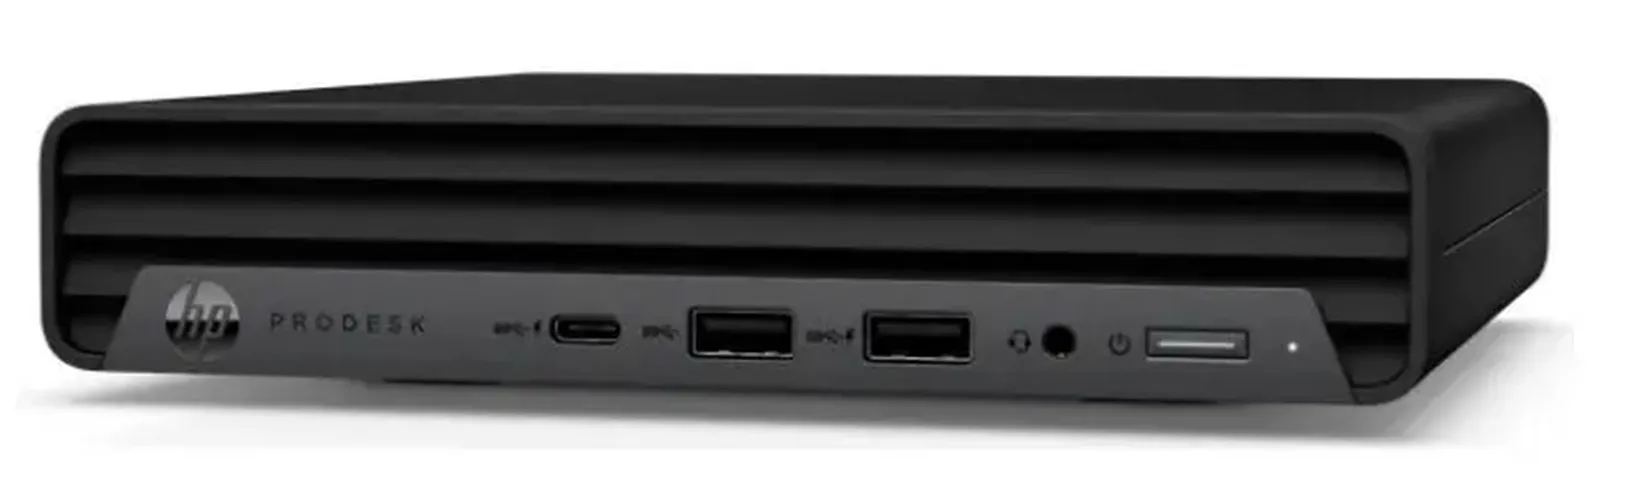 Мини ПК HP  PRODESK 400 G6 |G6400| 4Gb DDR4| SSD 128Gb, Черный, купить недорого